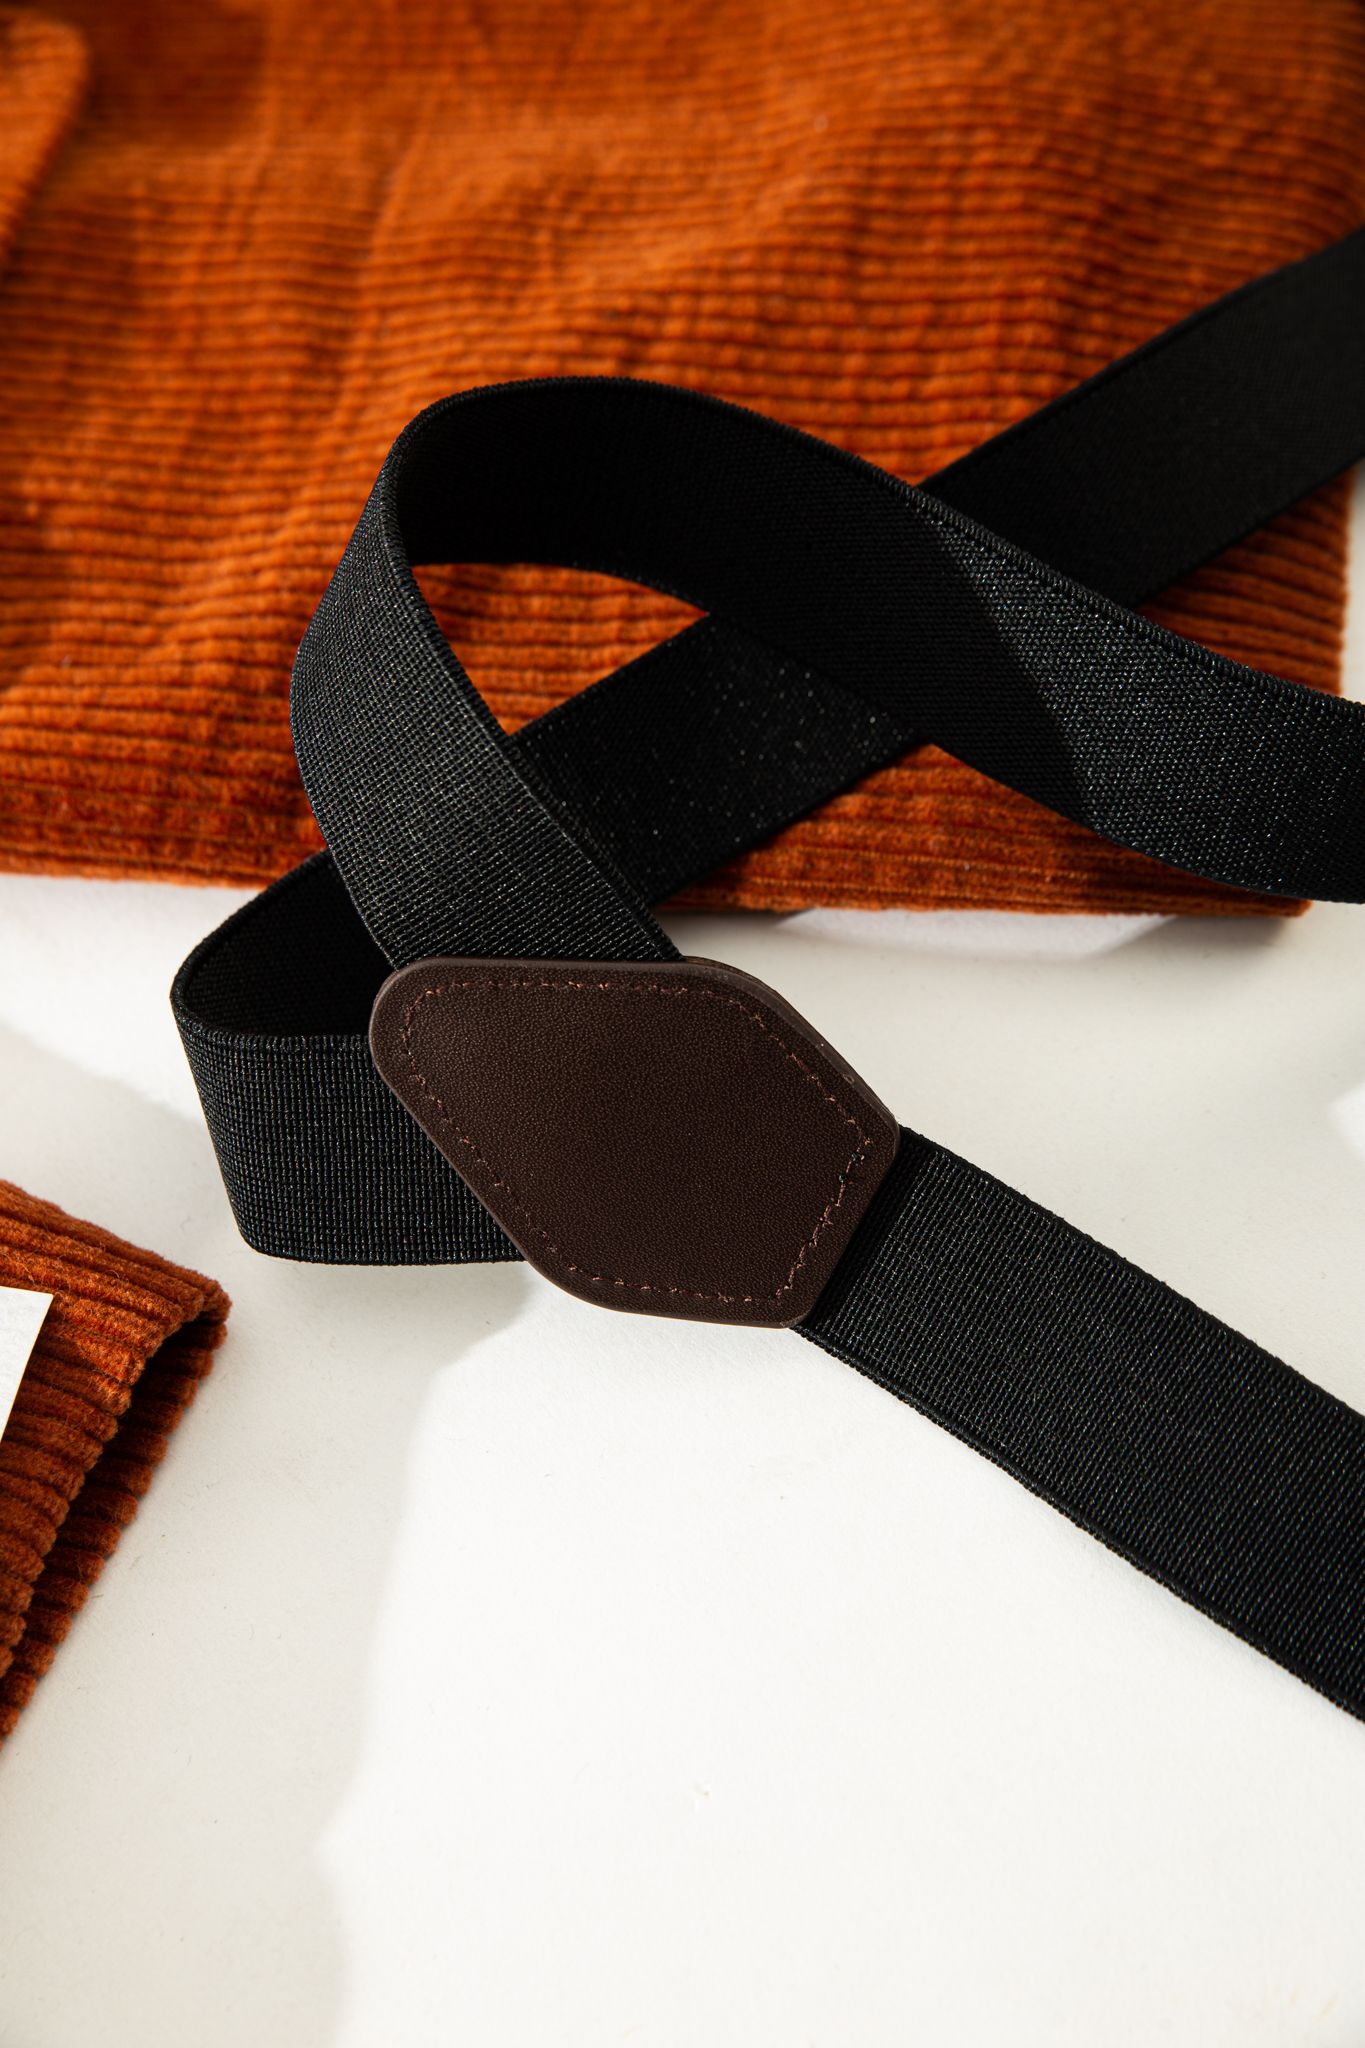  Black Suspenders 